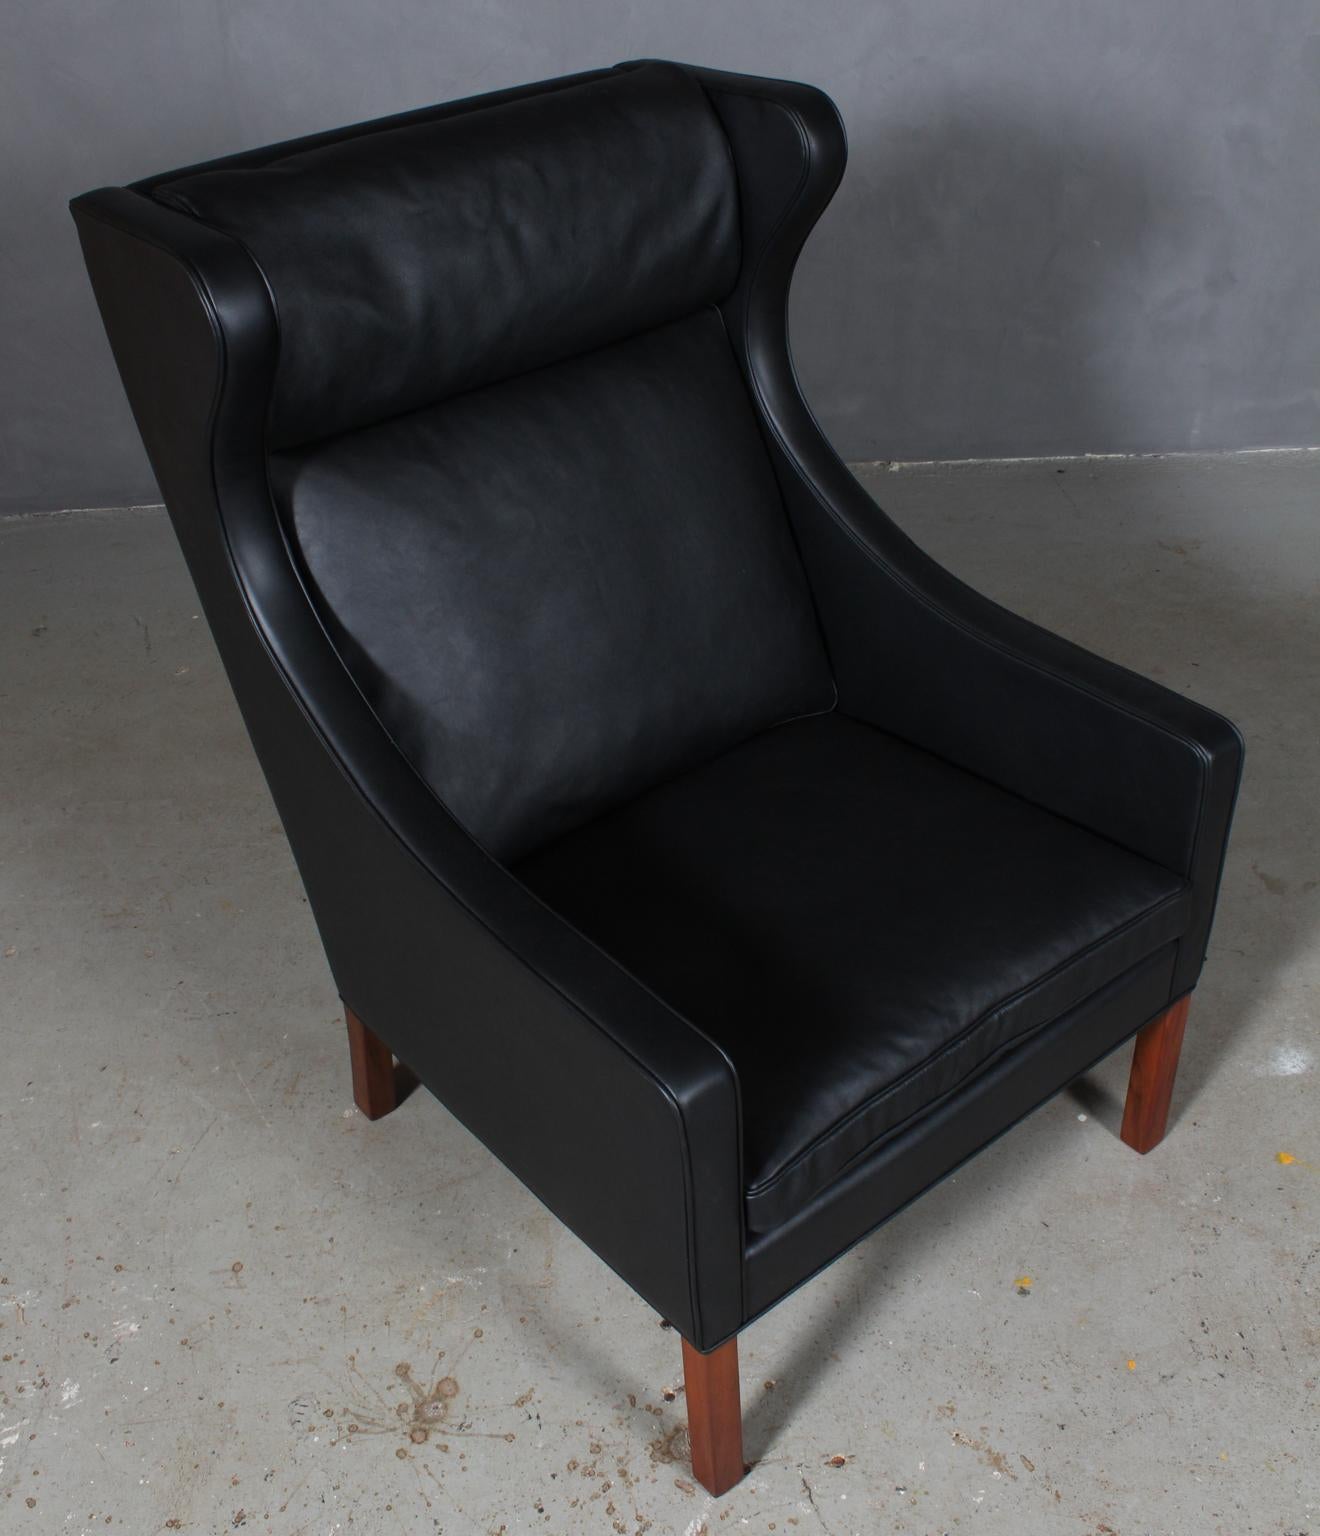 Børge Mogensen Ohrensessel neu gepolstert mit schwarzem Elegance Leder.

Beine aus Teakholz.

Modell 2204, hergestellt von Fredericia Furniture.